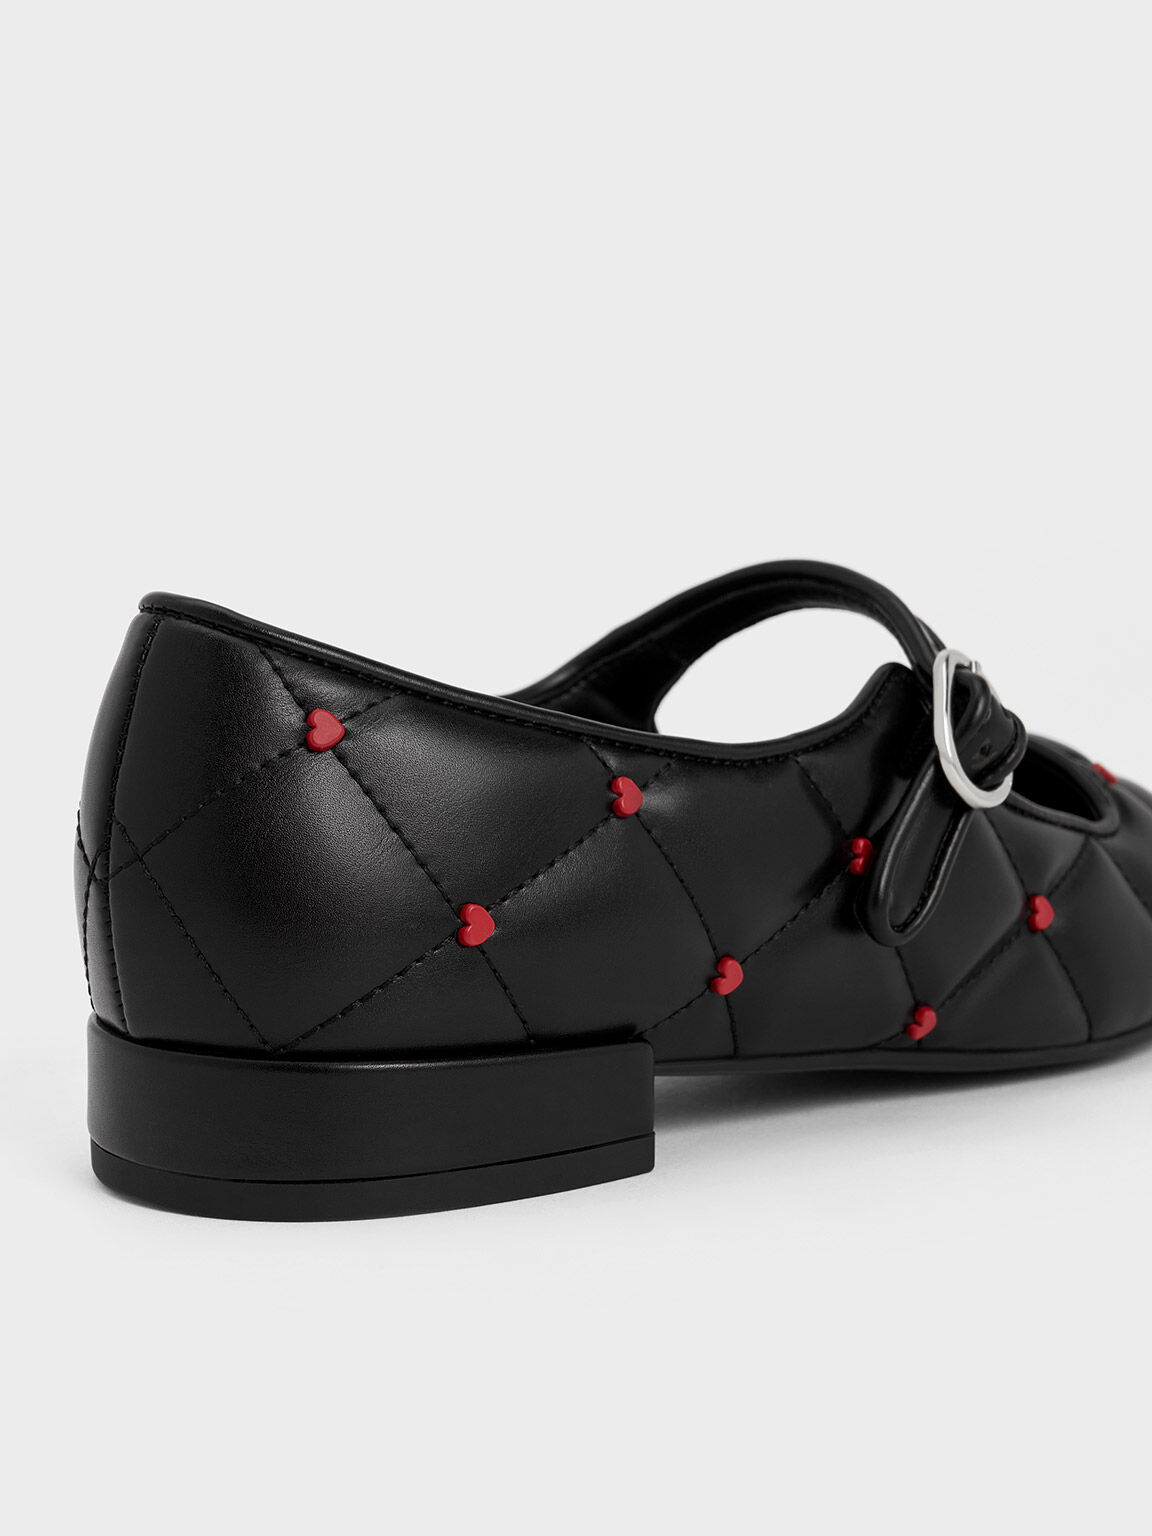 Giày búp bê mũi tròn Dahlia Heart-Print đen (Đen) | Giày - CHARLES 